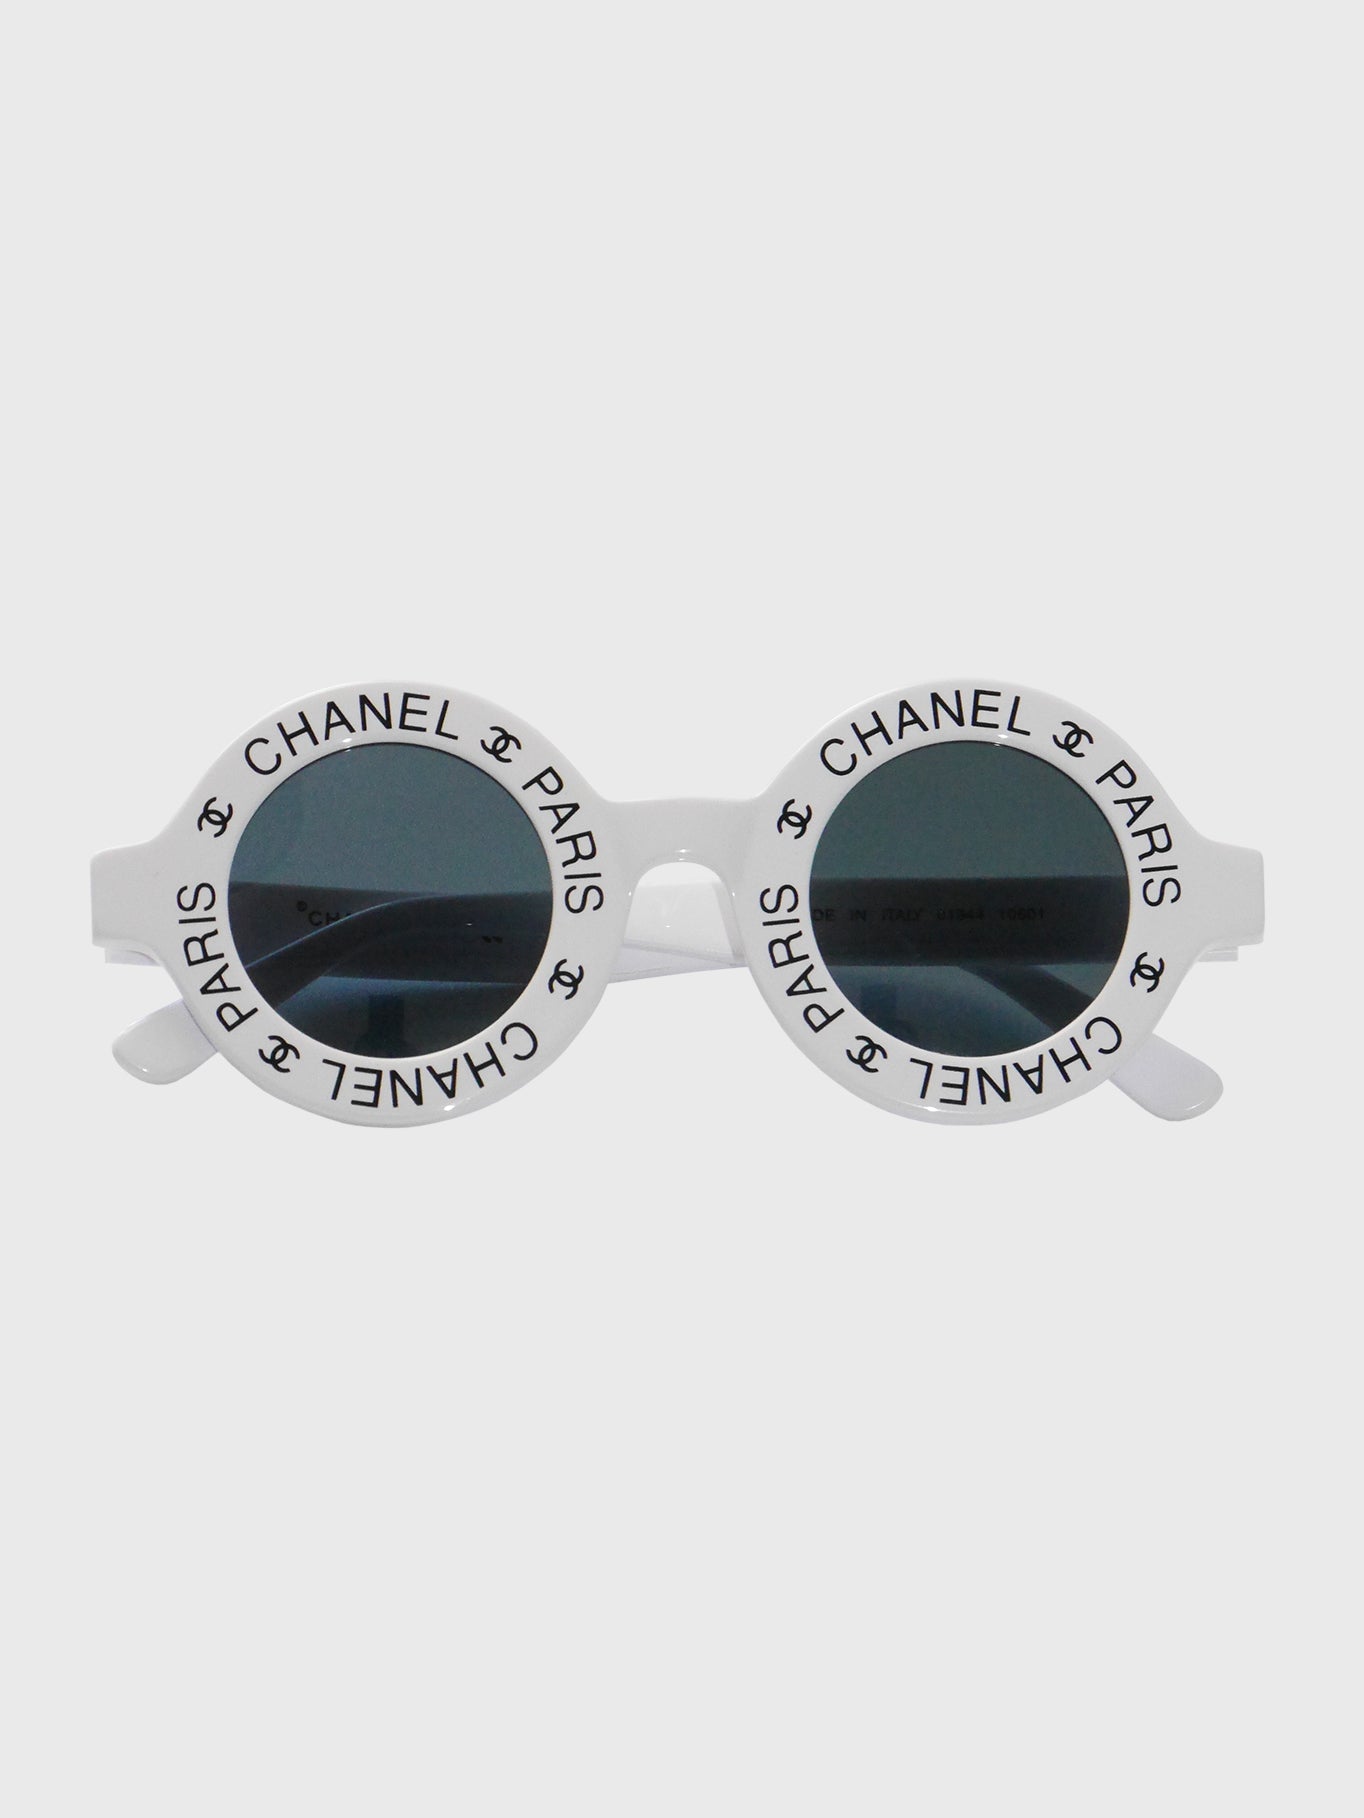 CHANEL Spring 1993 Vintage Round Logo Signature Sunglasses Mod. 01944 –  VINTAGE VON WERTH